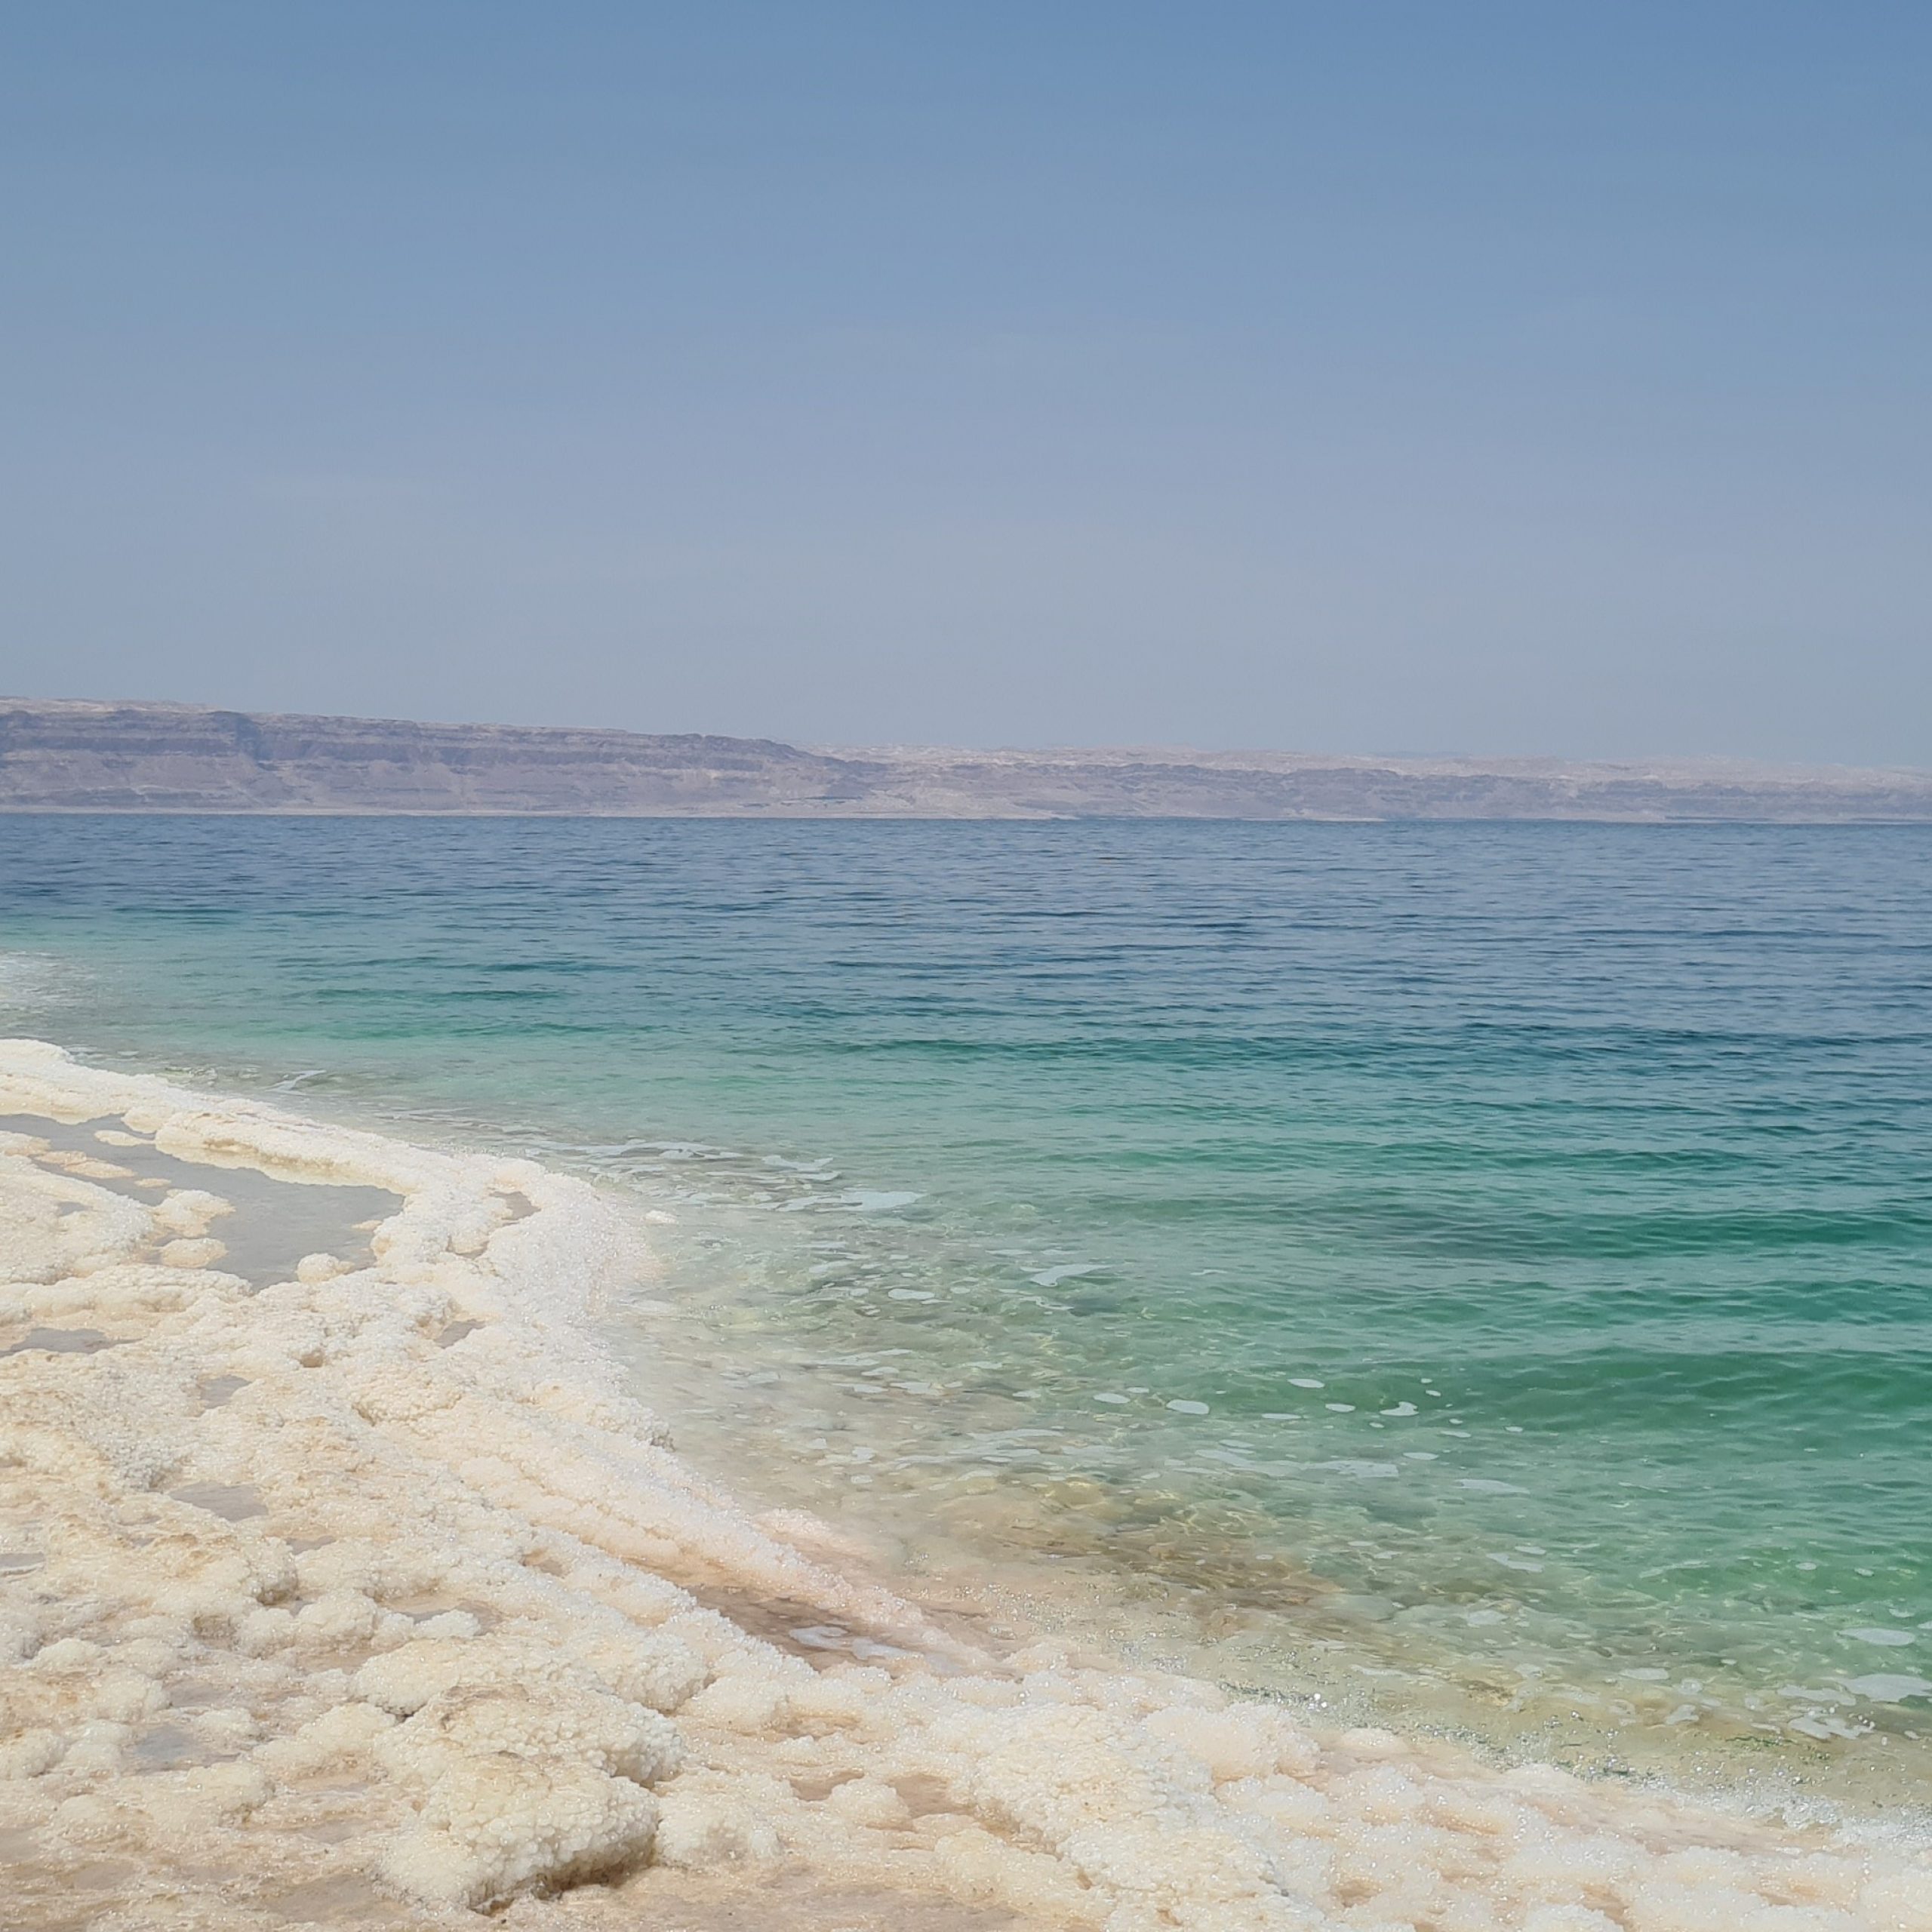 Day 8: Wadi Rum - Dead Sea